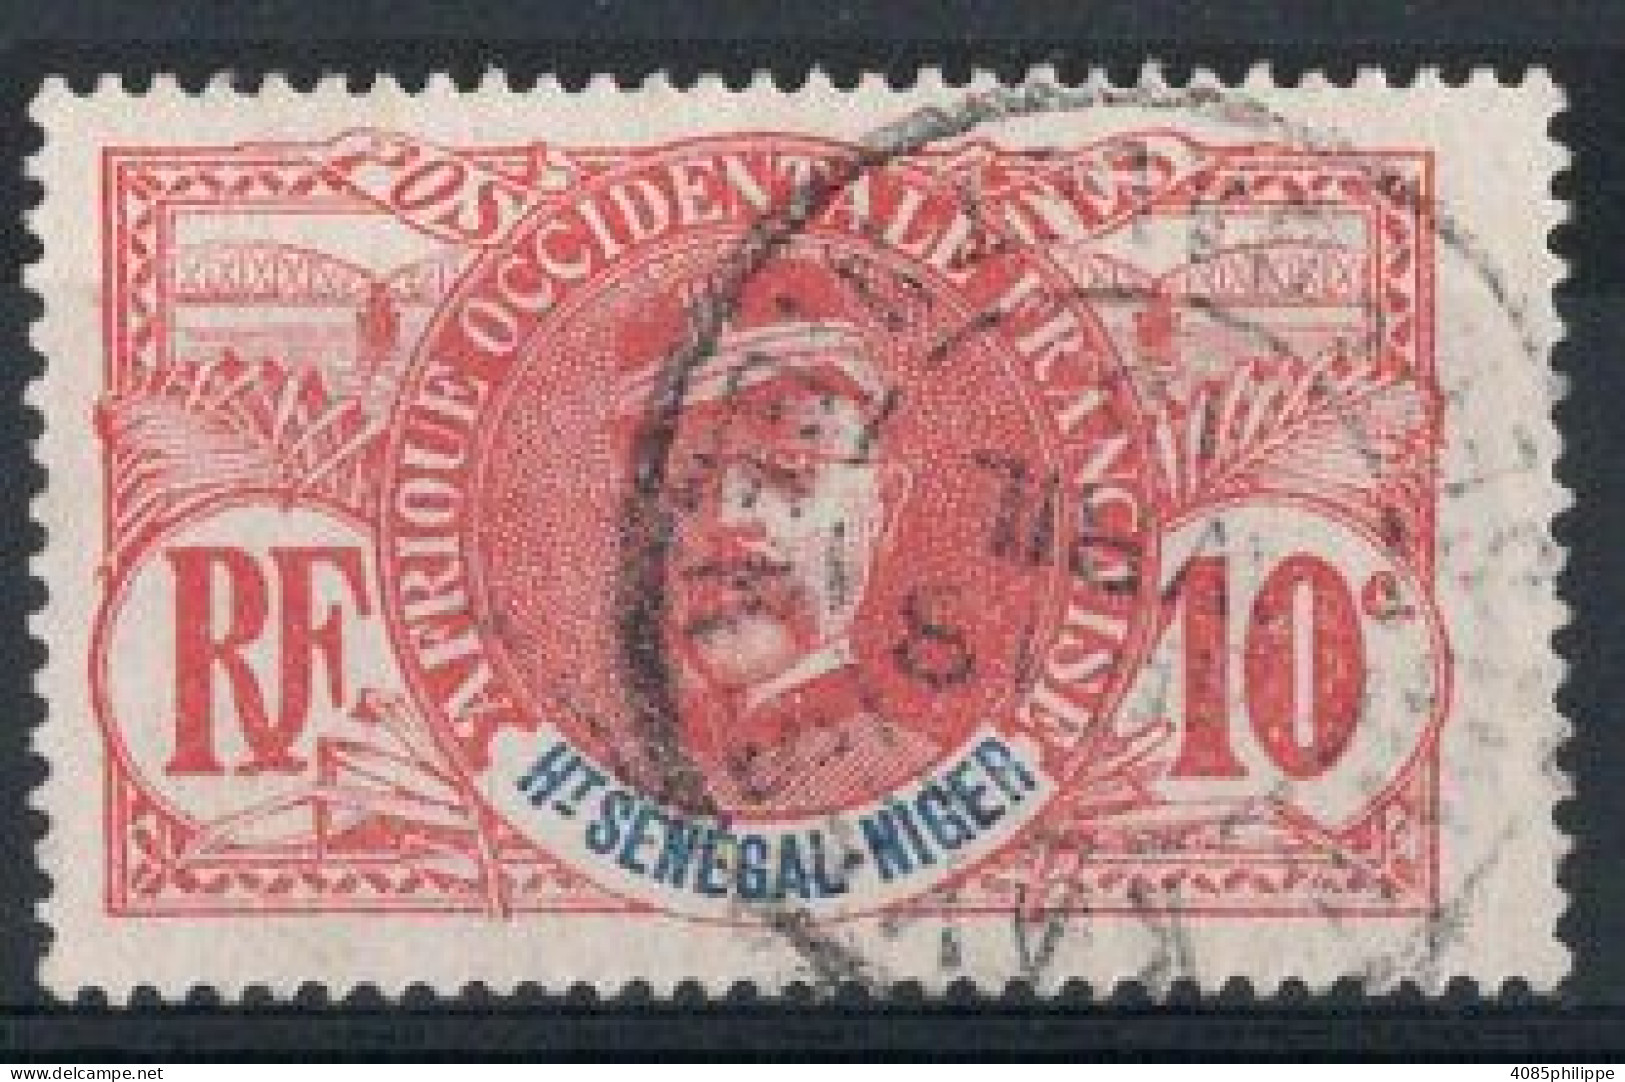 HAUT SENEGAL NIGER Timbre-poste N°5 Oblitéré TB Cote : 5€00 - Used Stamps